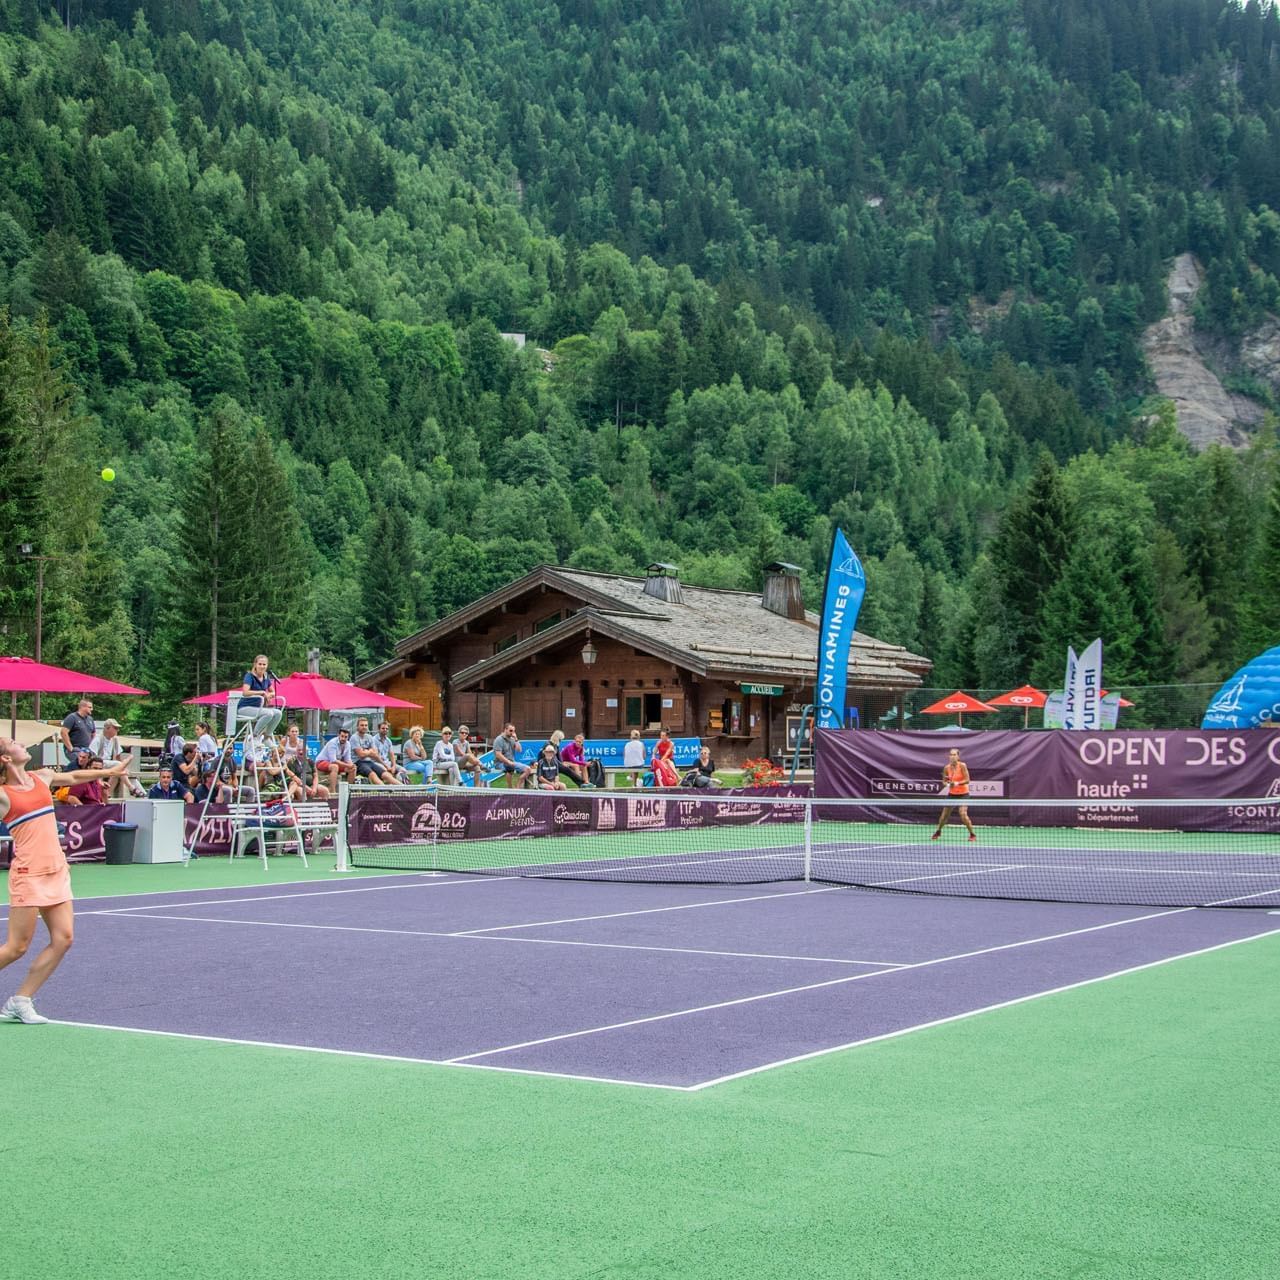 Players at Les Contamines Tennis Tournament at Originals Hotels